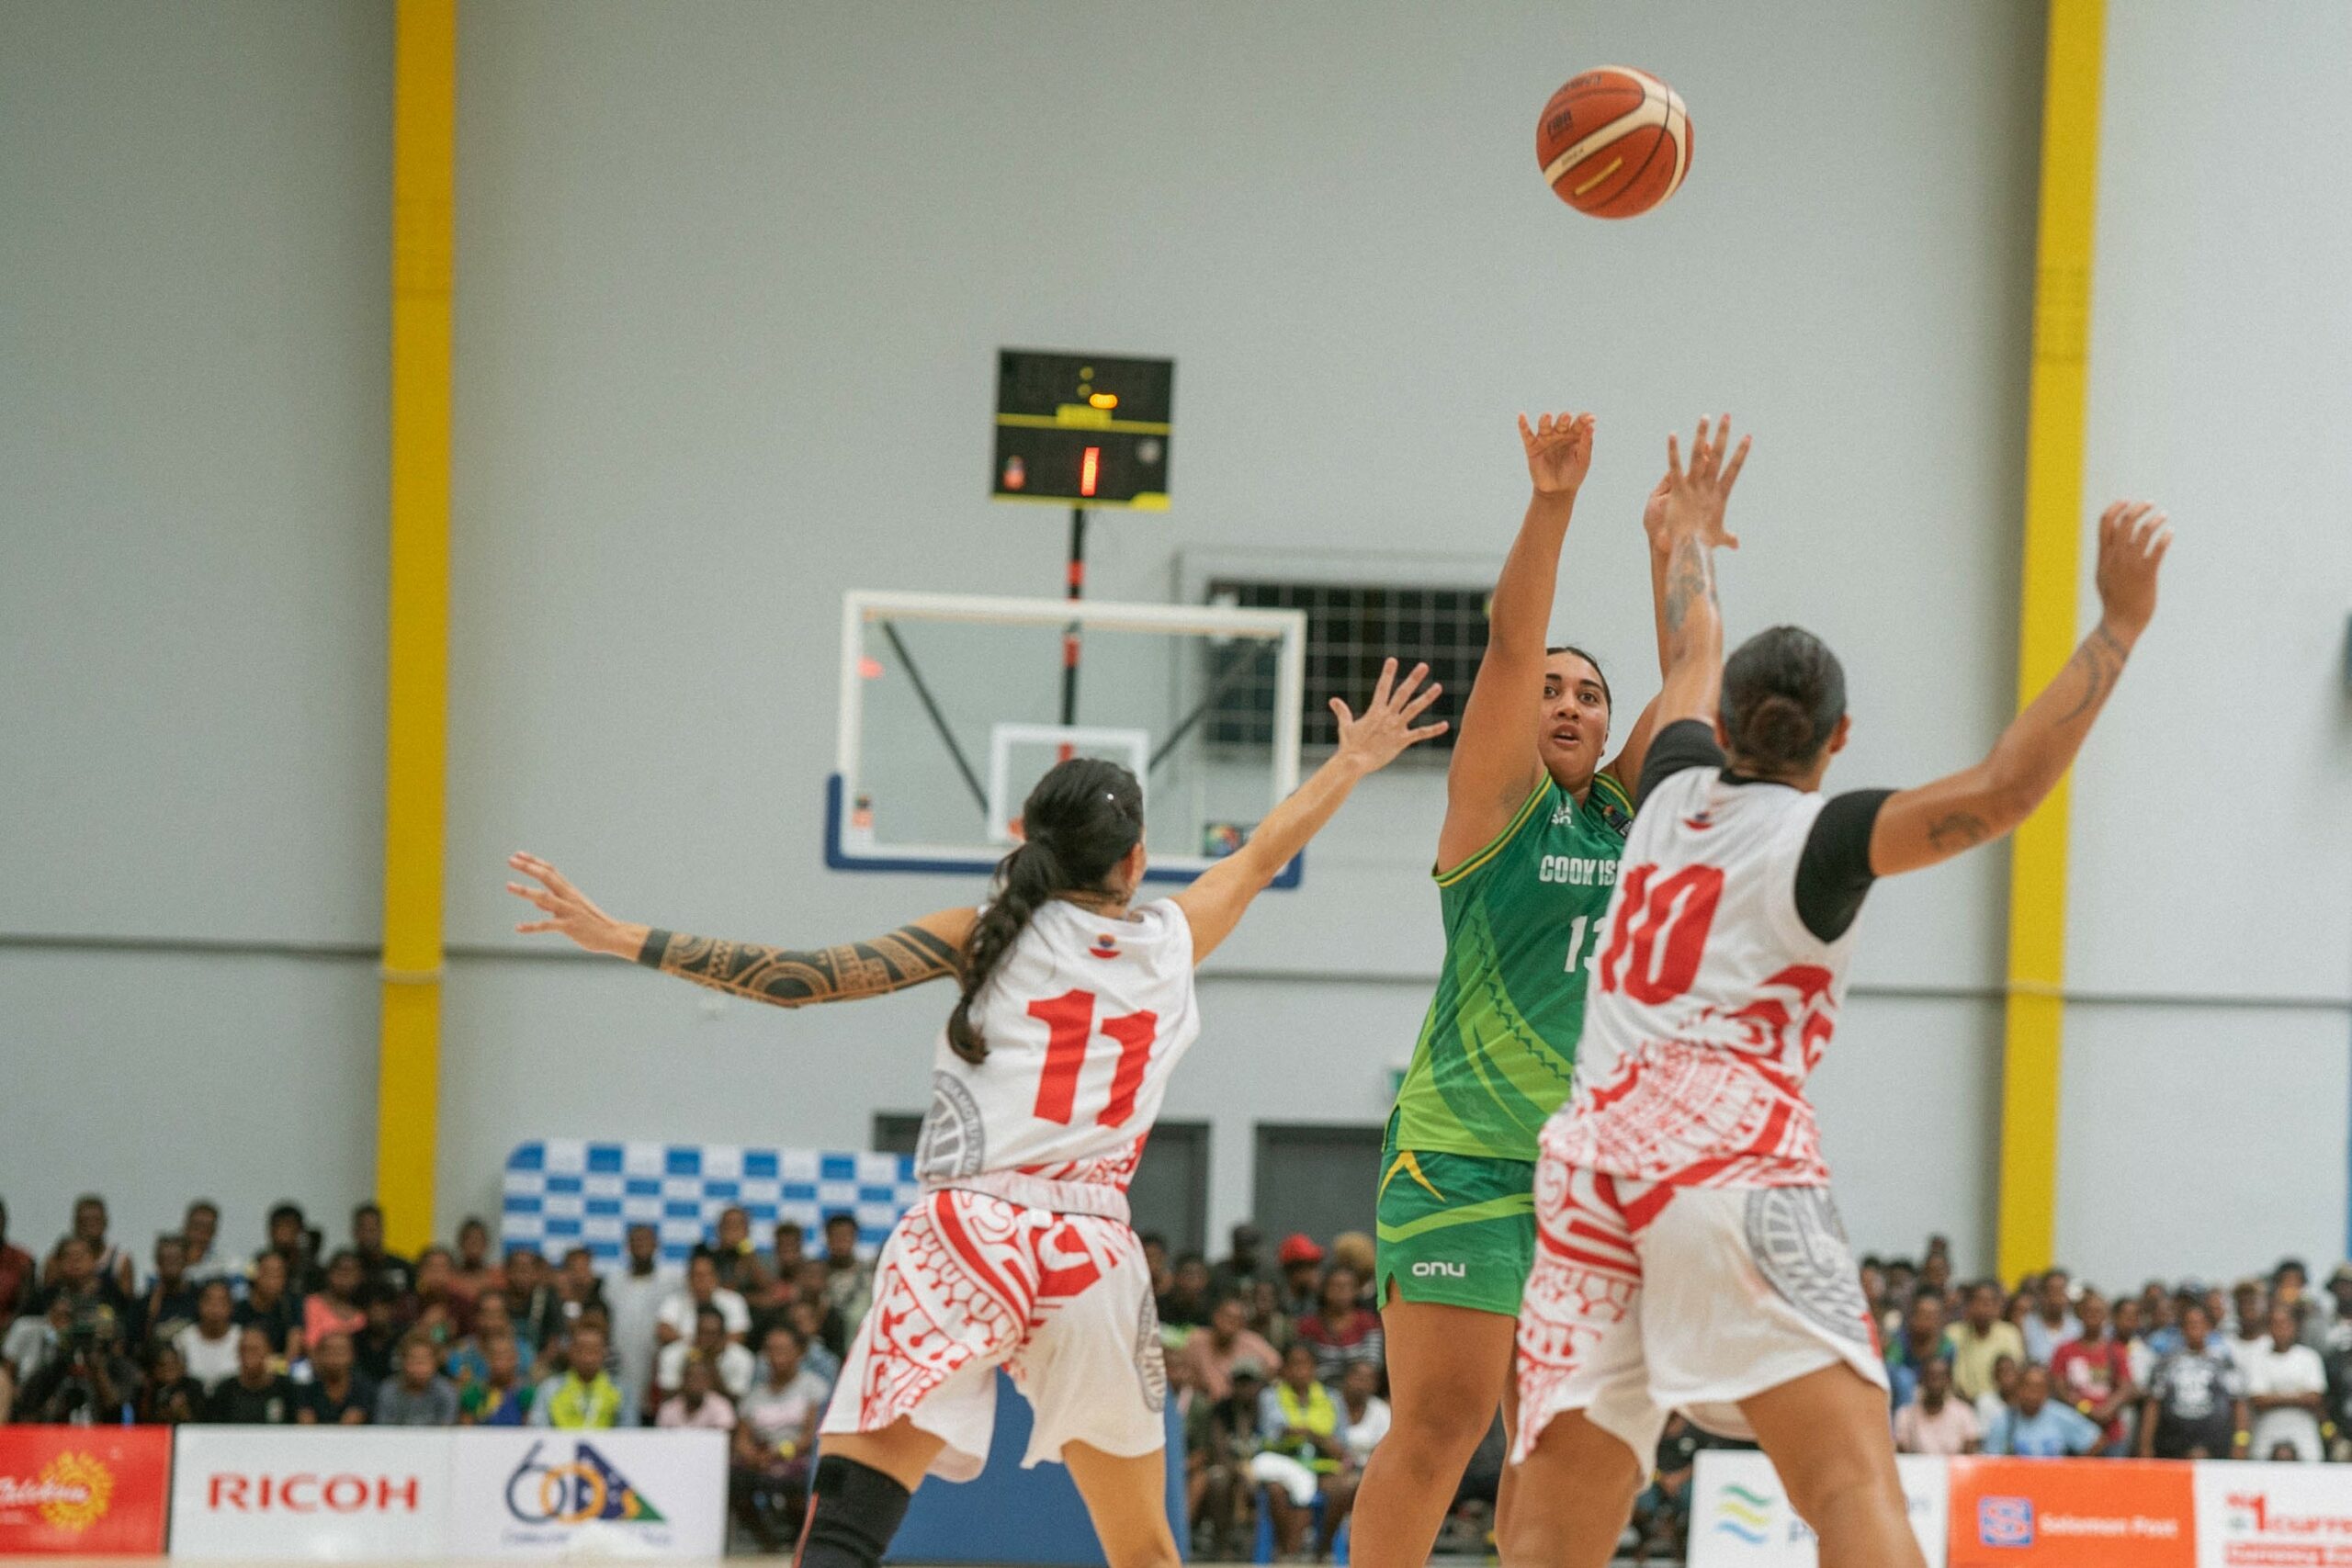 Women playing basketball